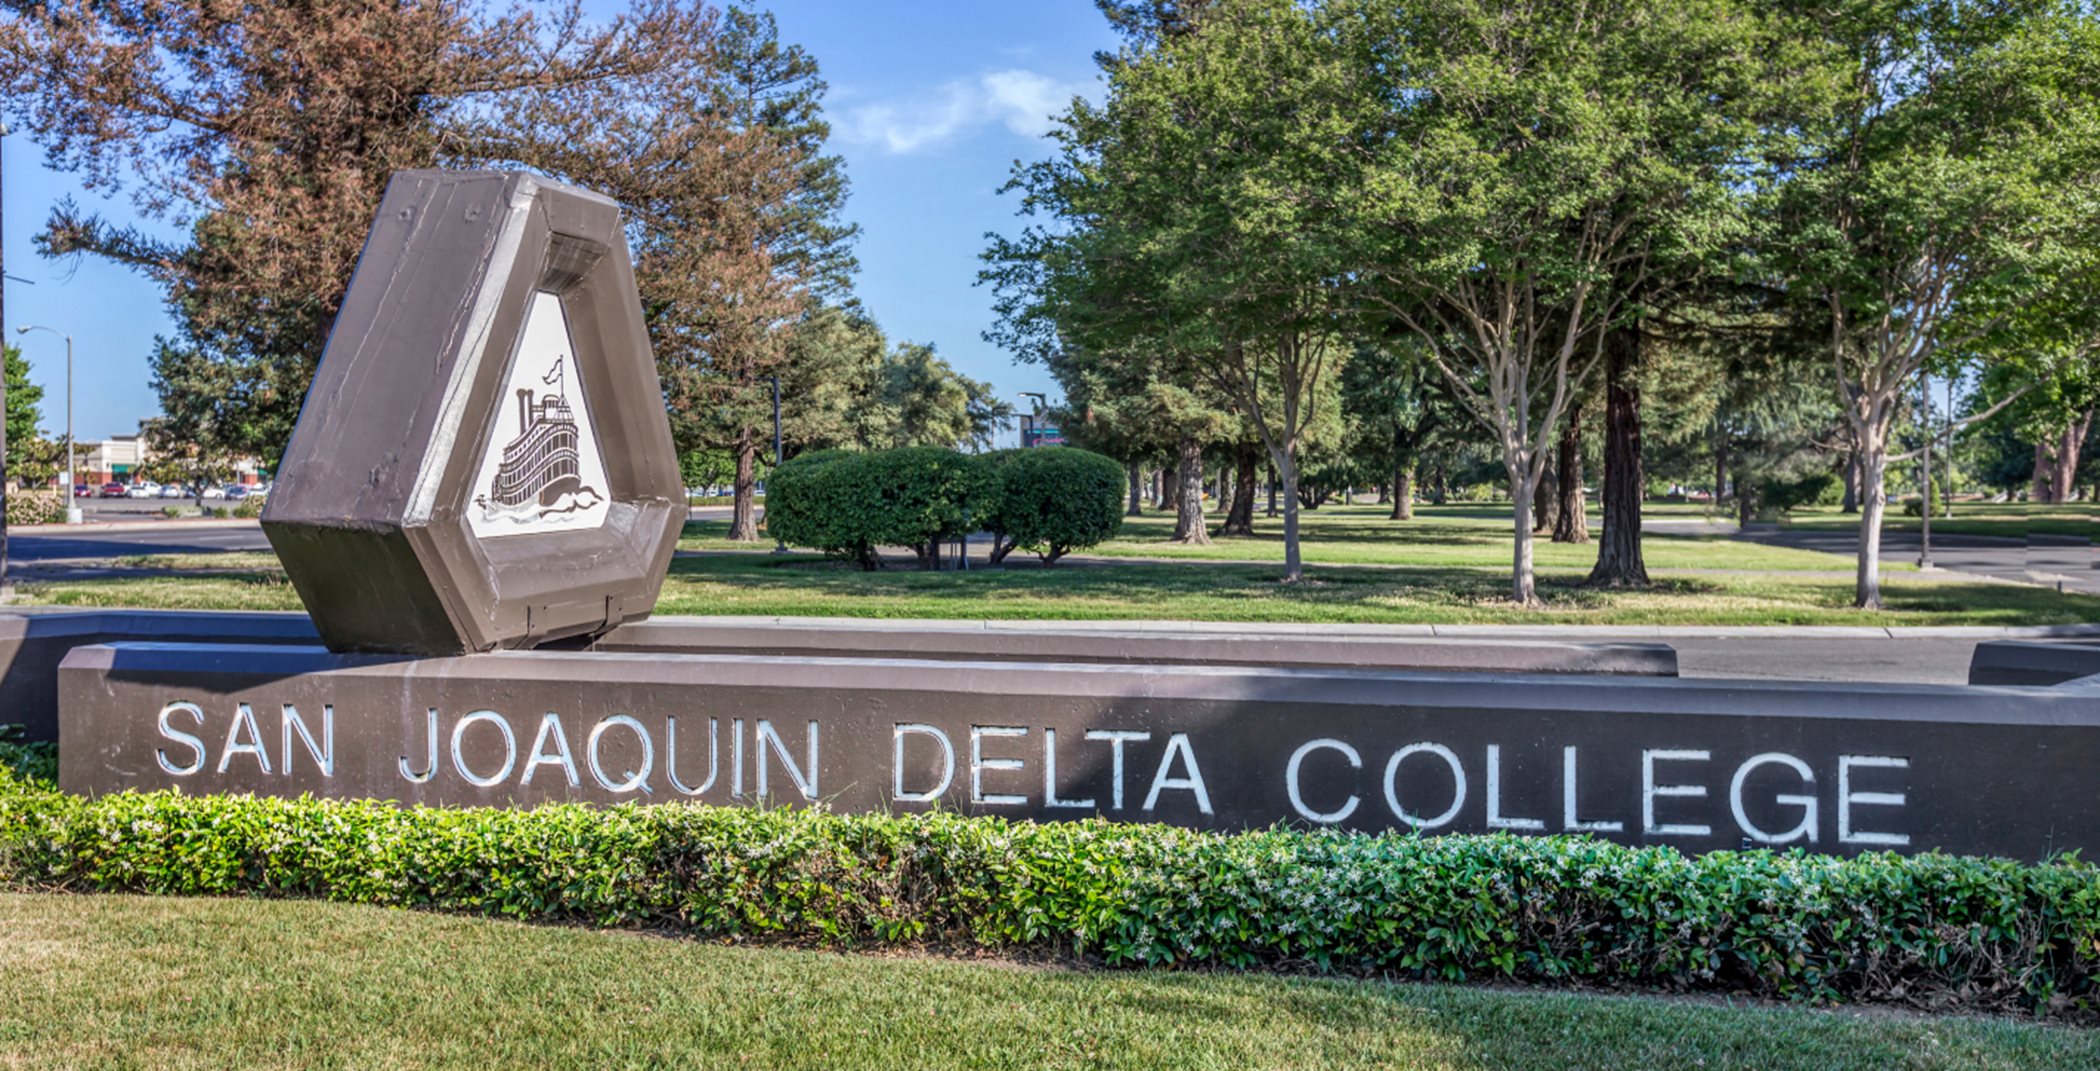 San Joaquin Delta College monument sign